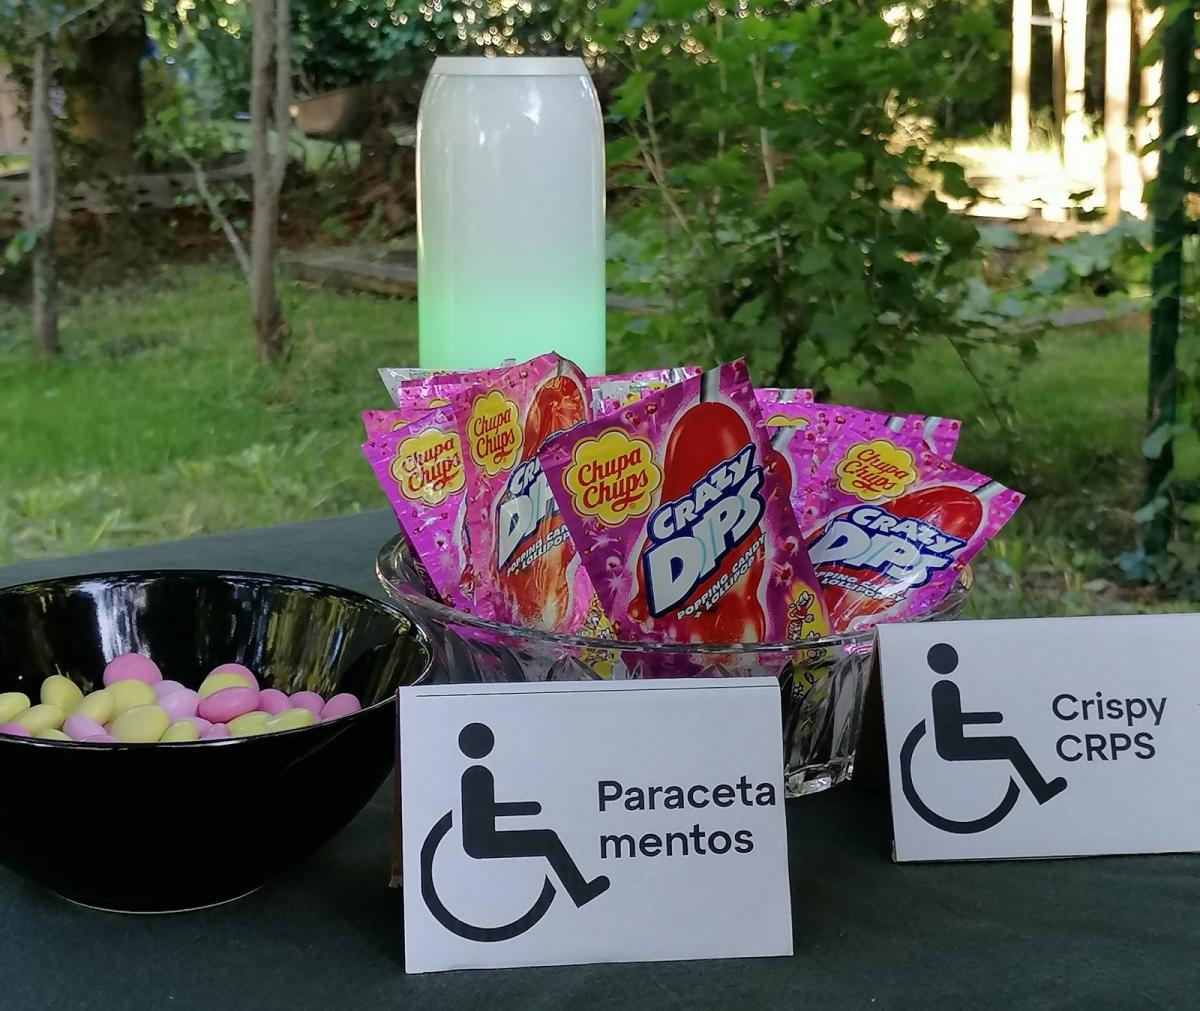 Liza gaf deze zomer nog een feestje om haar ‘vier jaar met een handicap te vieren.’ Er waren paracetamentossen, cocktails als ‘dark en handy’ en lolly's in de vorm van voeten.